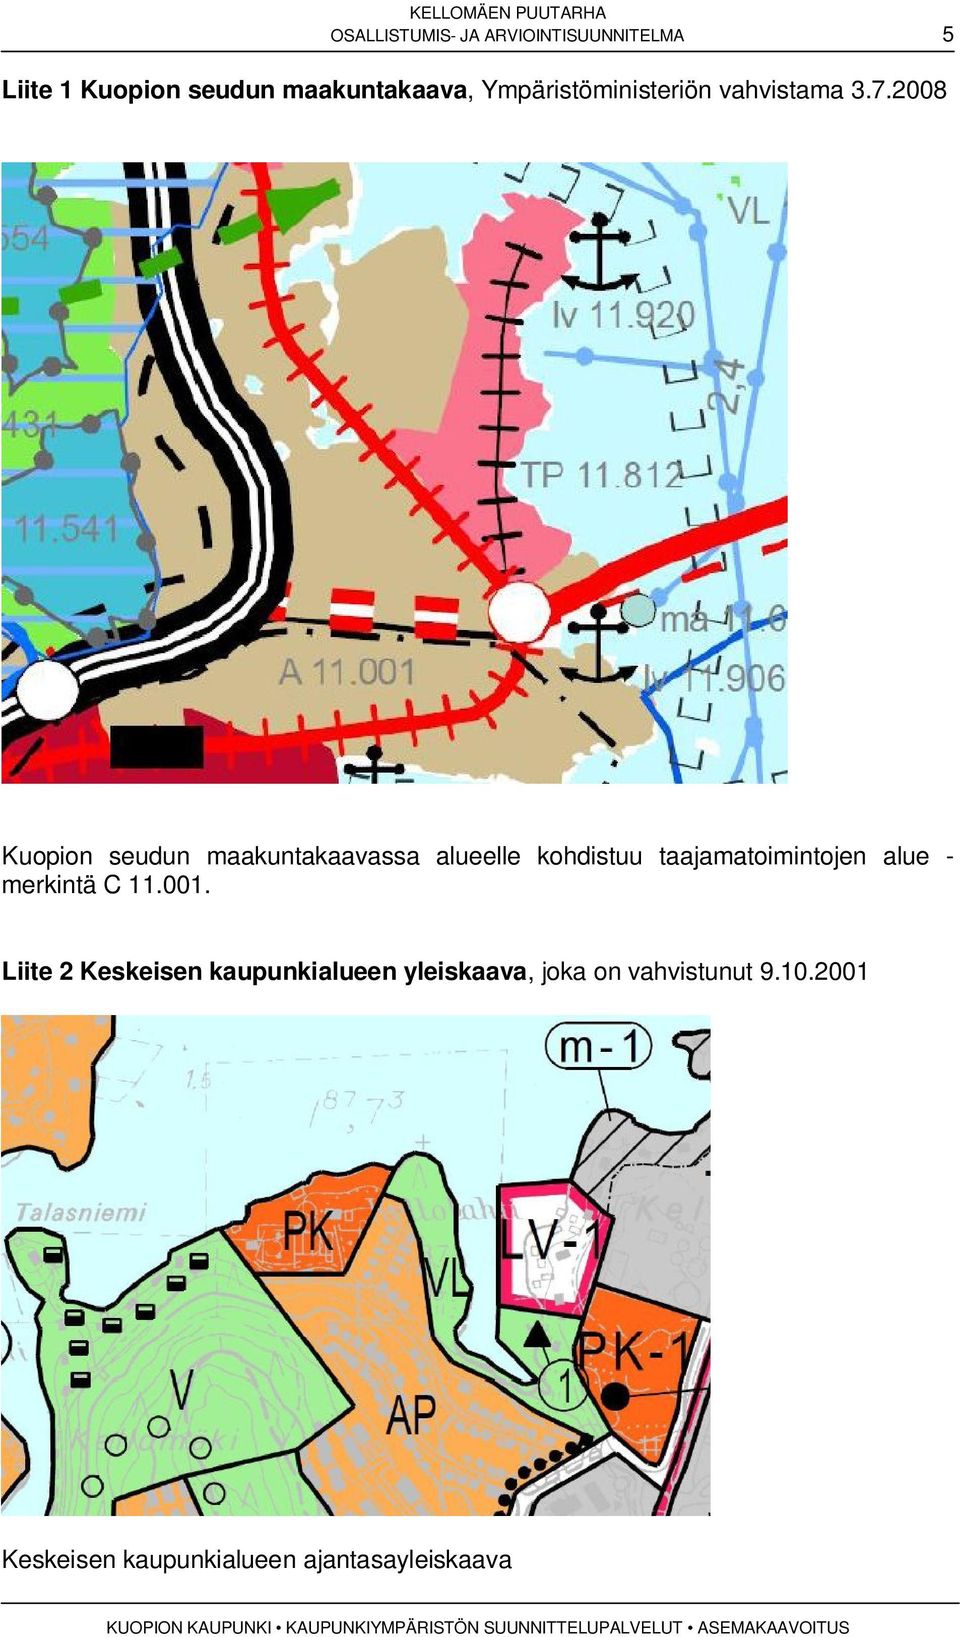 2008 Kuopion seudun maakuntakaavassa alueelle kohdistuu taajamatoimintojen alue -